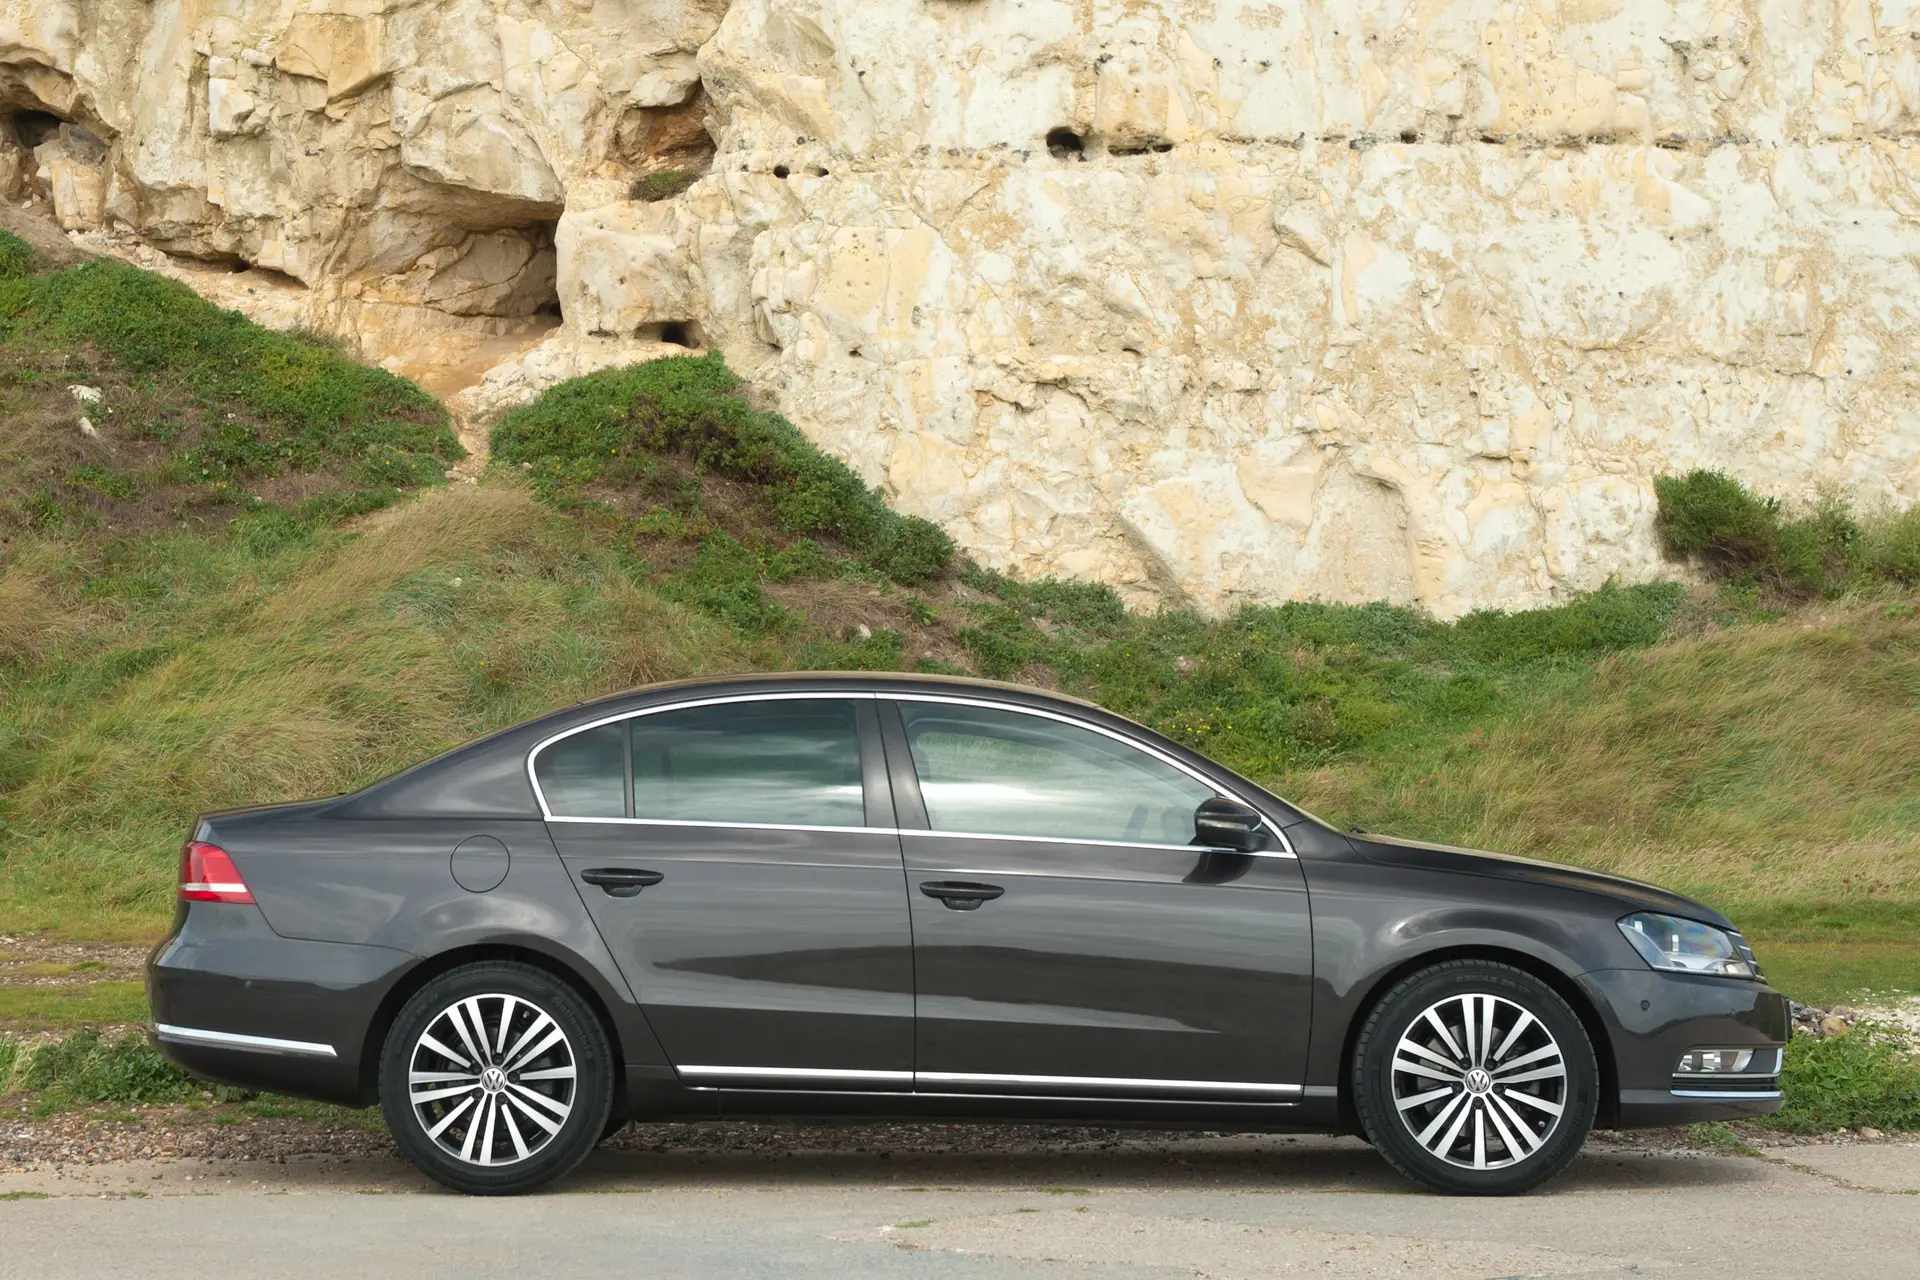 Volkswagen Passat (2011-2015) Review: exterior side photo of the Volkswagen Passat